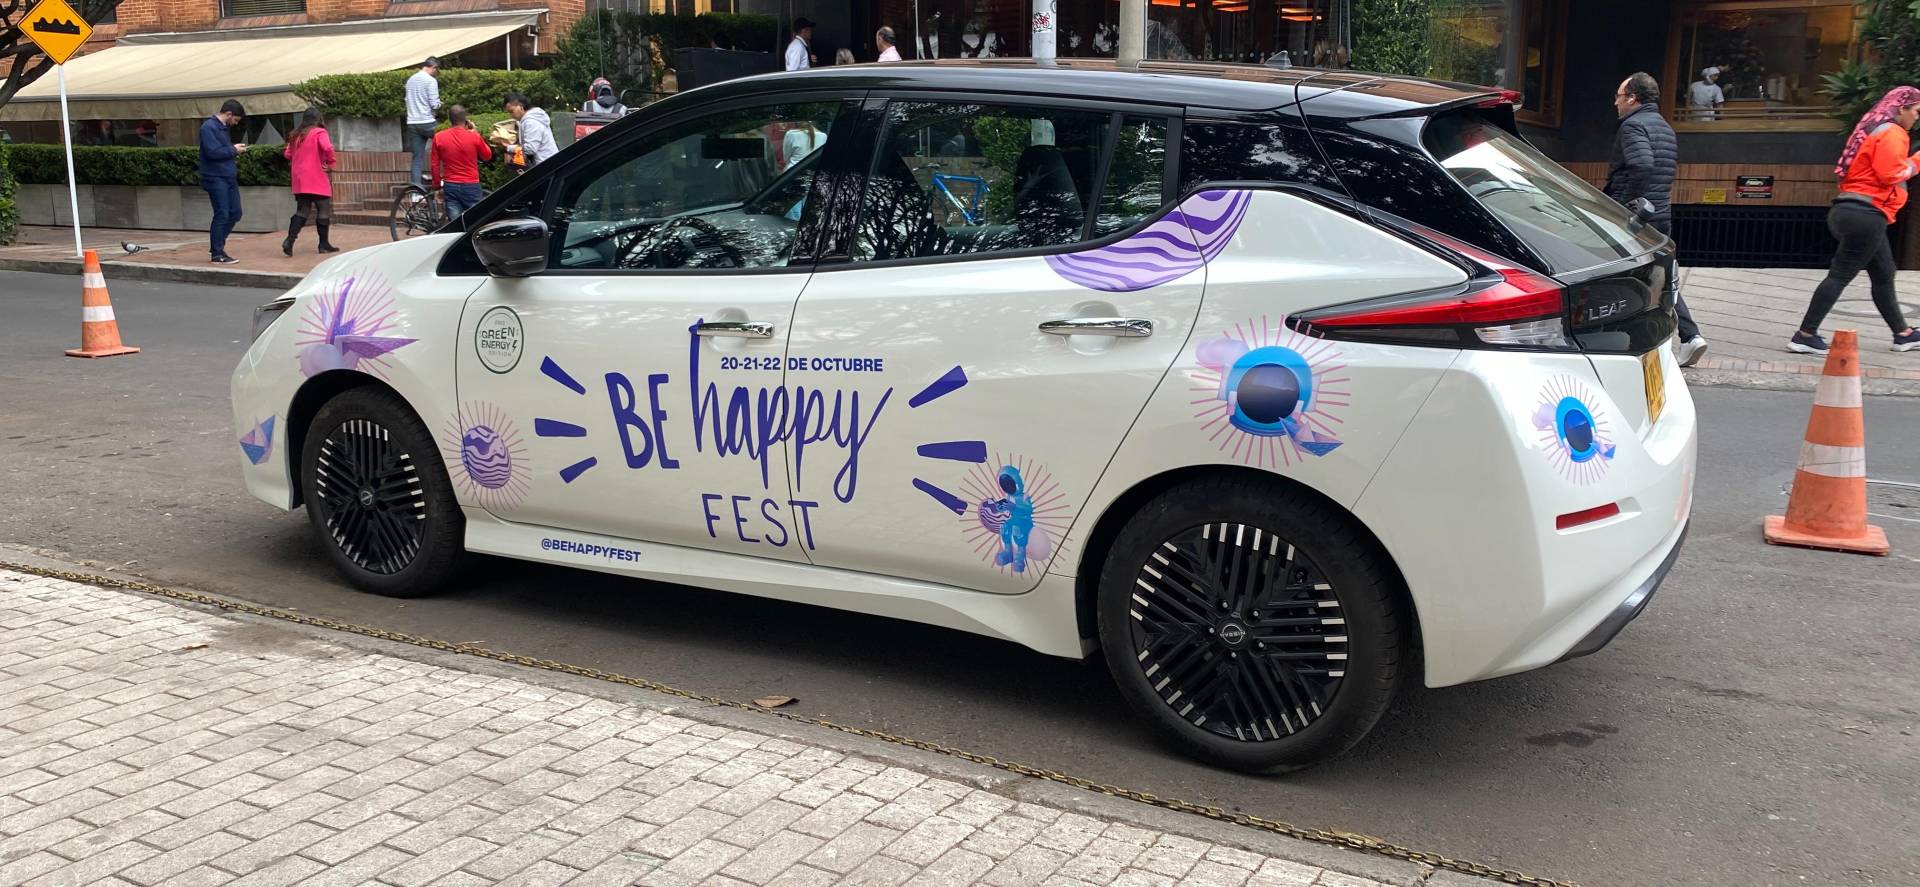 Nissan LEAF conmemora el día mundial de ahorro de energía, participando en la octava edición del Be Happy Fest. V12MAGAZINE